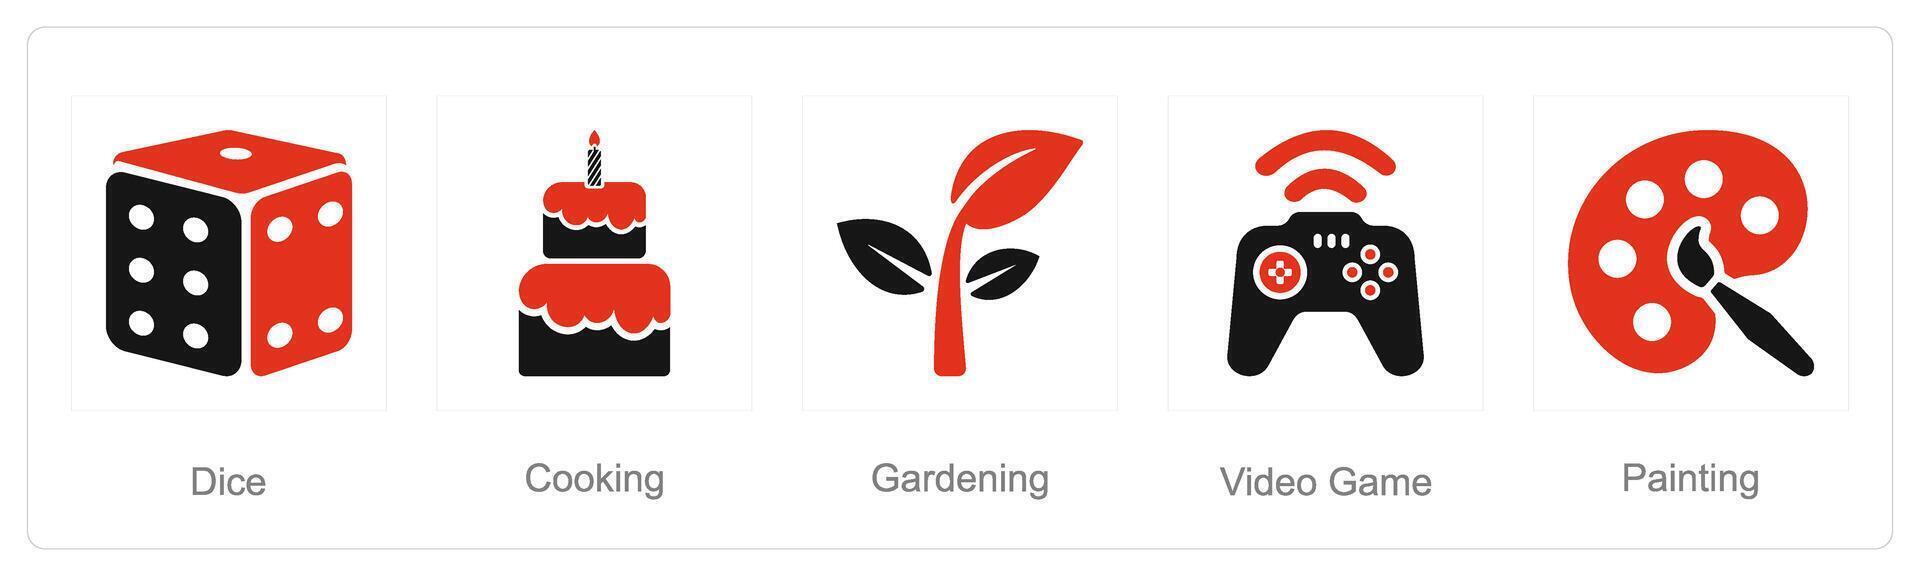 en uppsättning av 5 hobby ikoner som tärningar, matlagning, video spel vektor